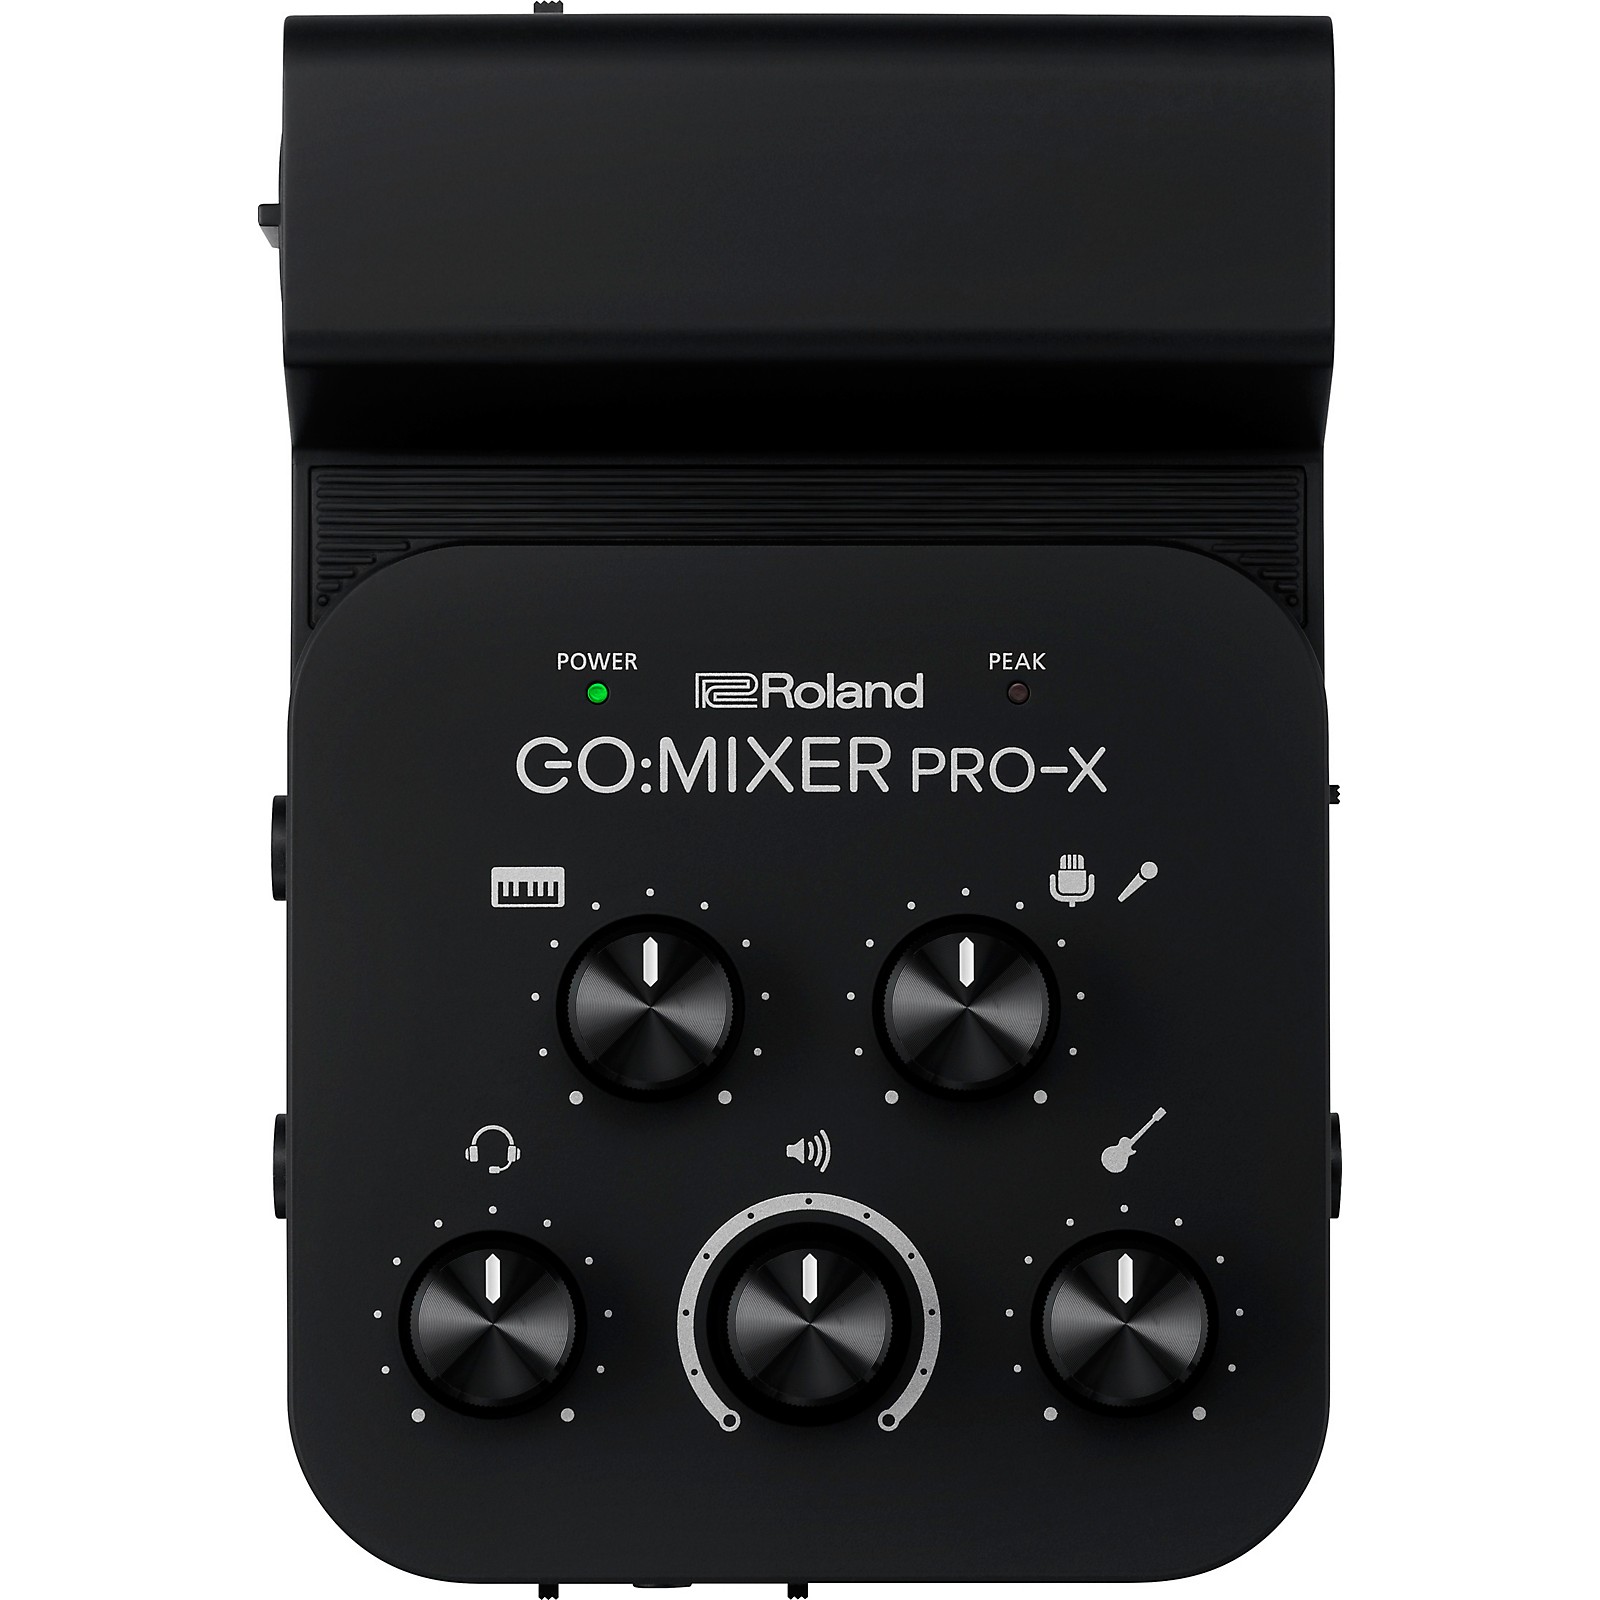 Roland GO:MIXER PRO-X Audio Mixer For Smartphones | Music u0026 Arts